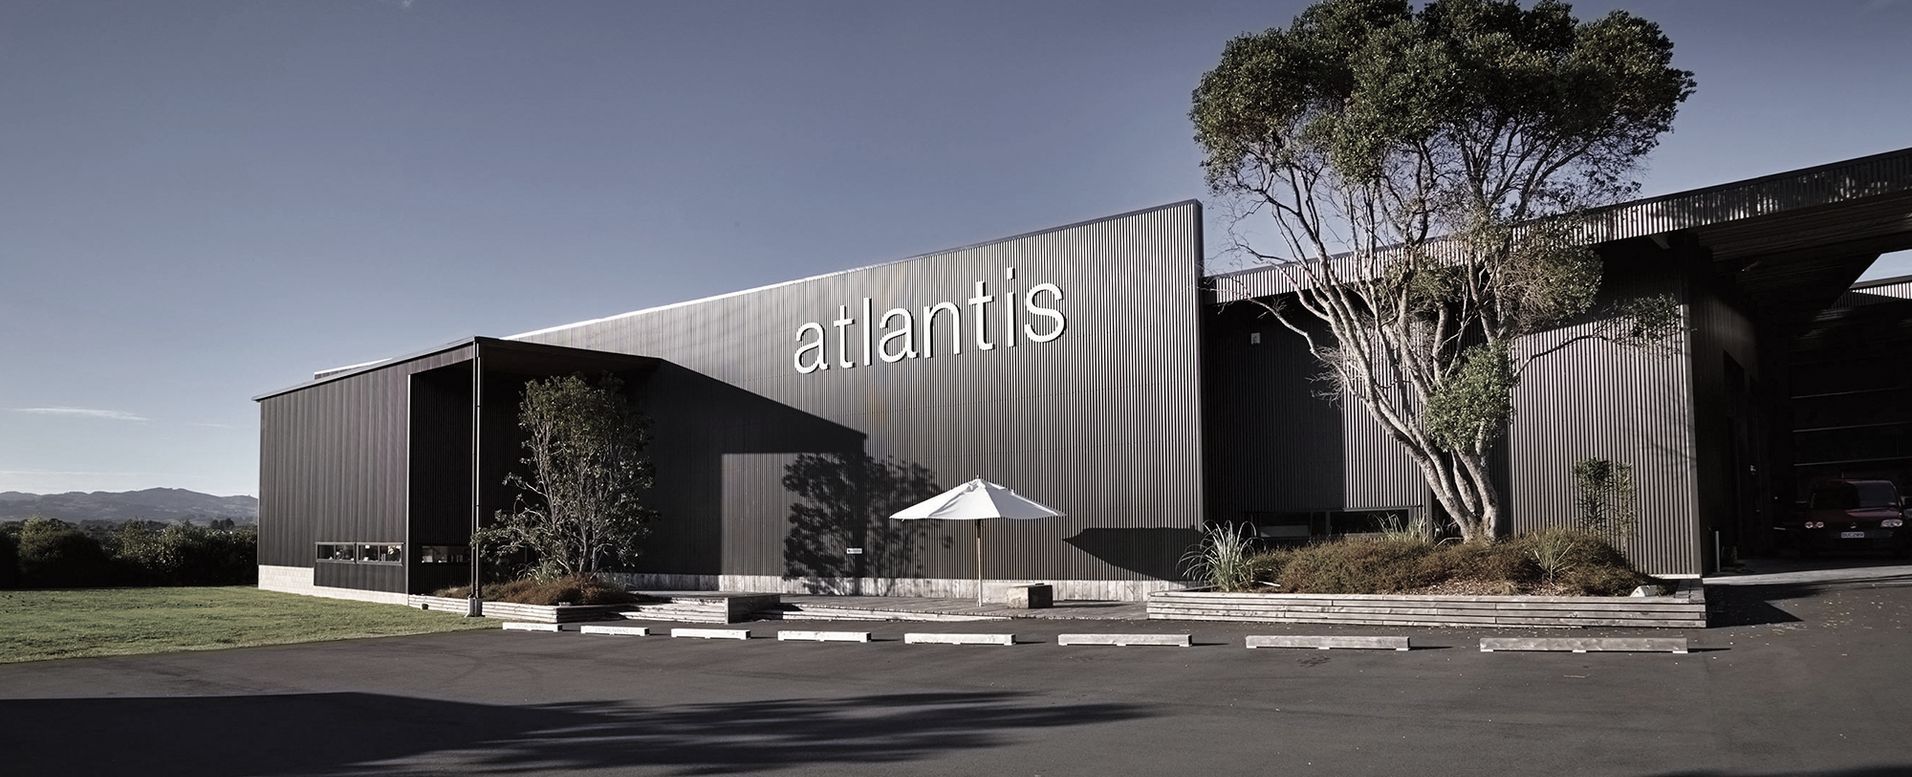 Atlantis Banner image